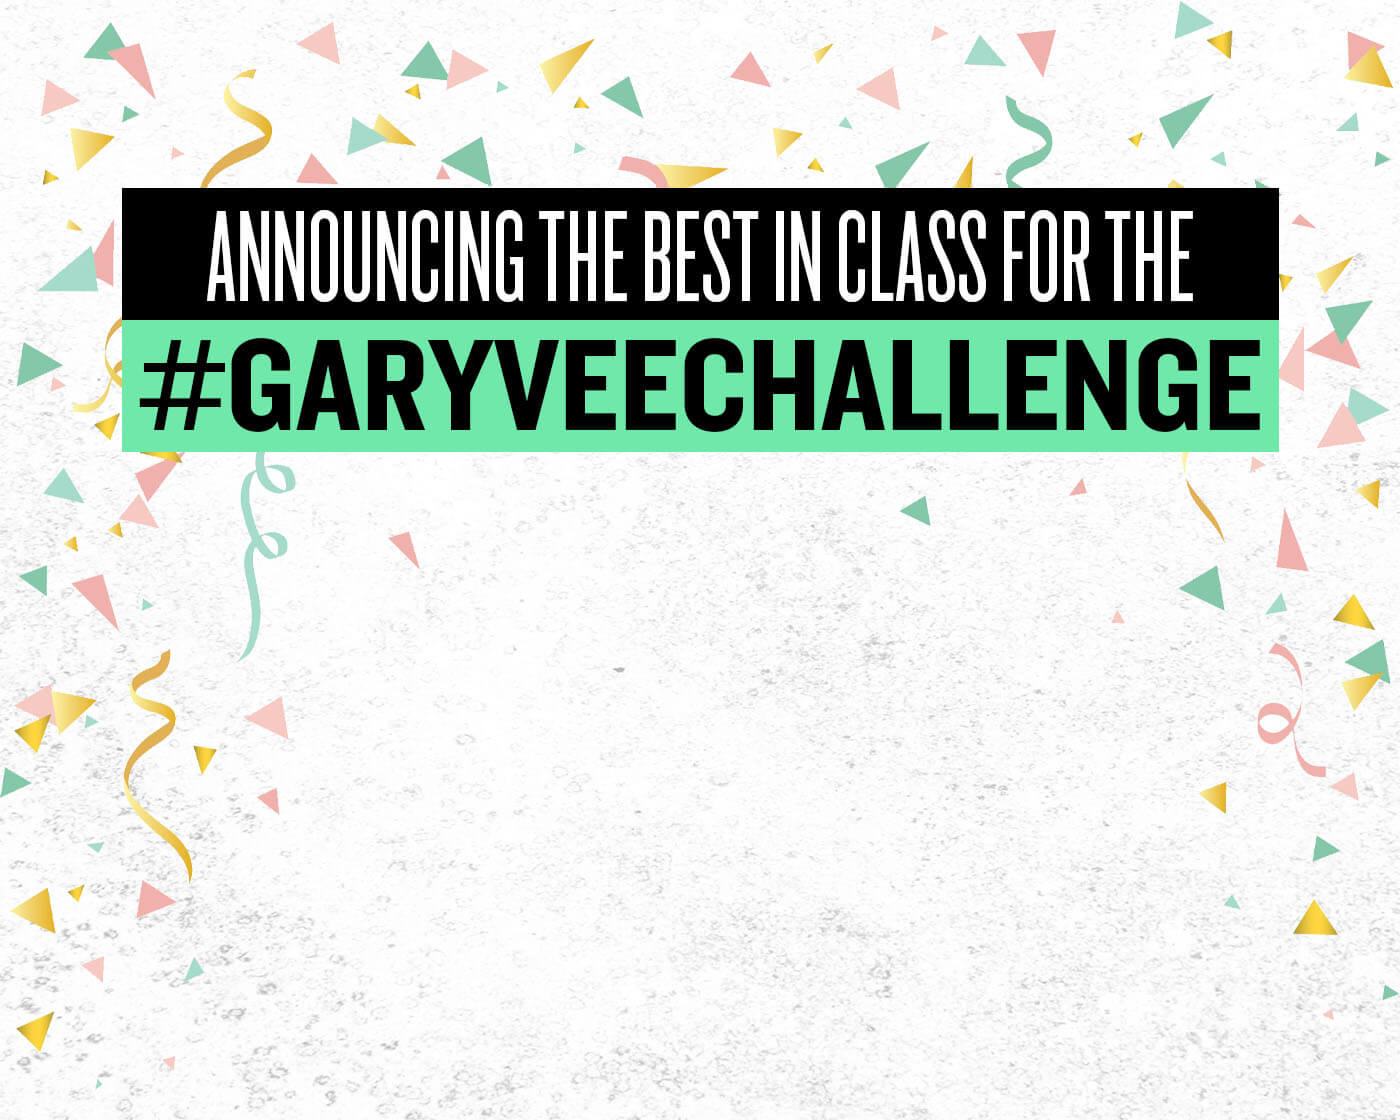 Announcing The GaryVee Challenge “Best In Class”